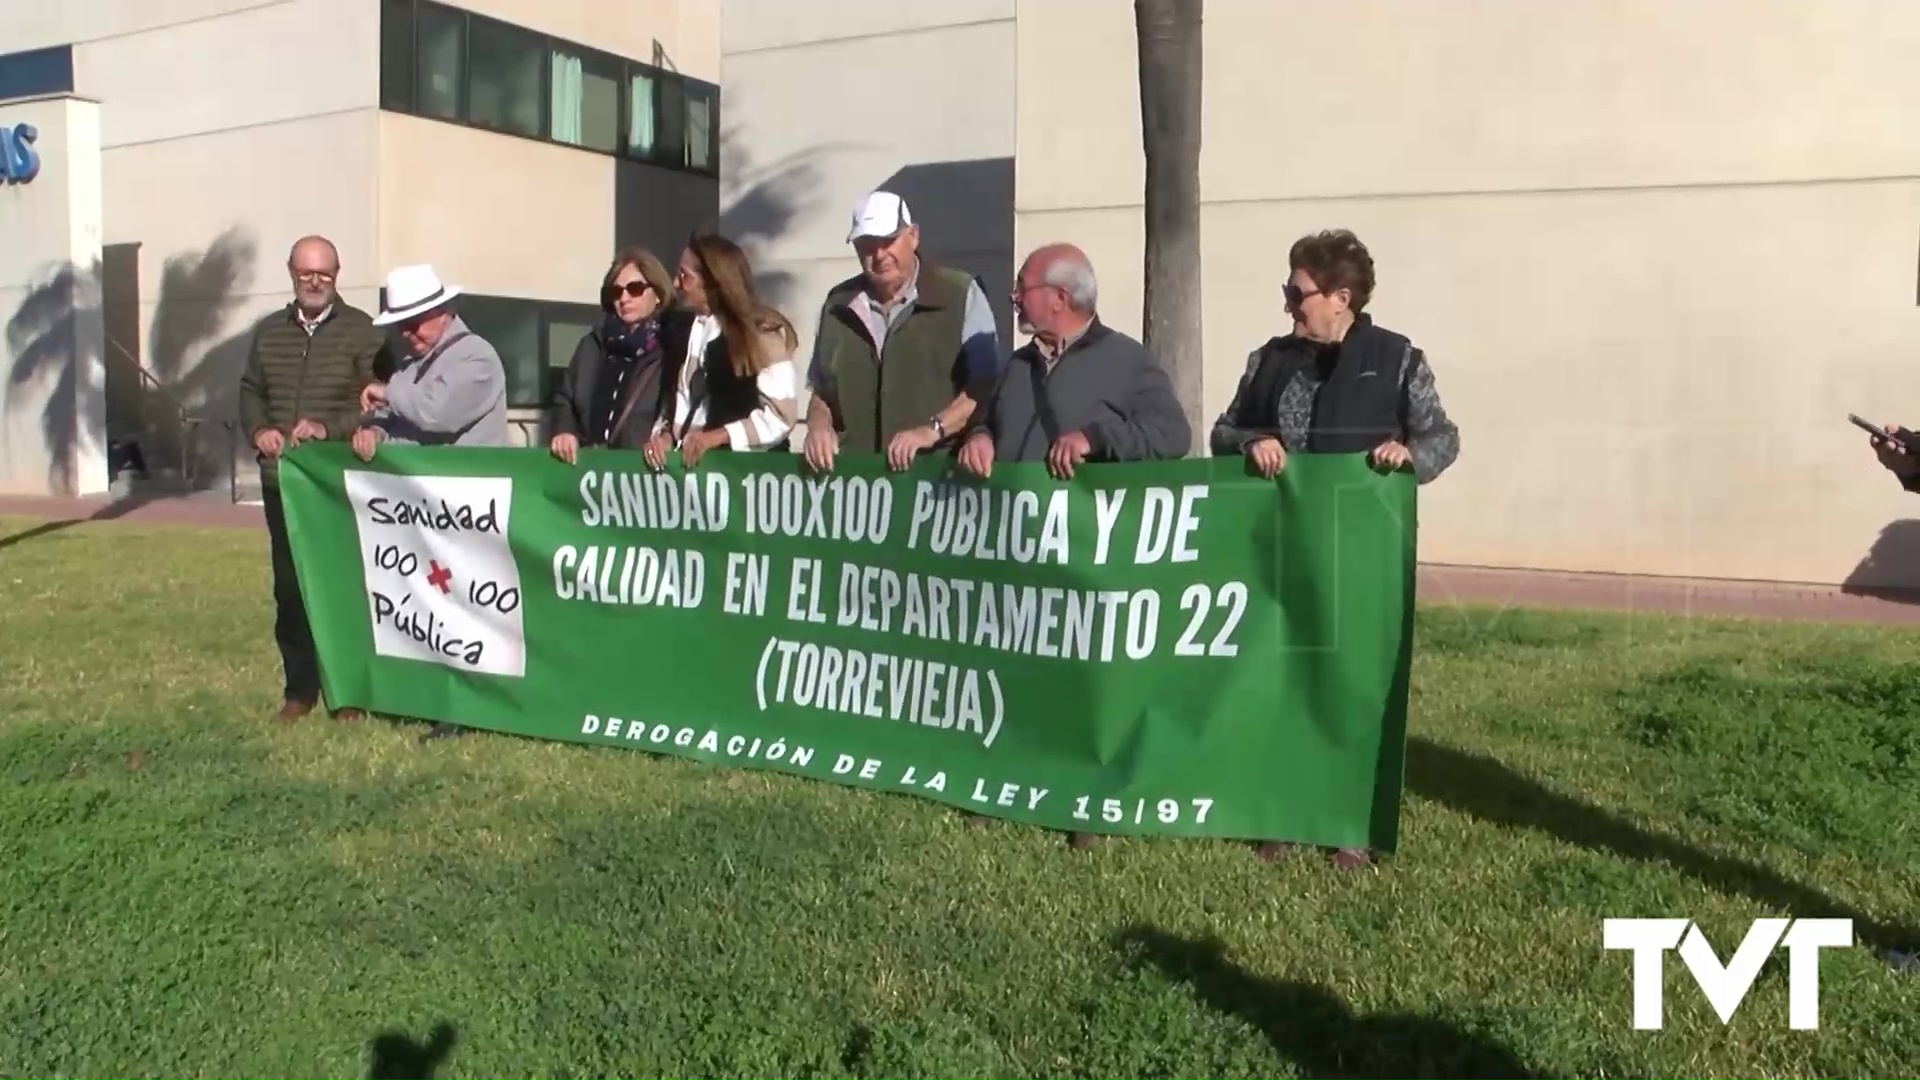 Imagen de La Plataforma por la Sanidad 100x100 Pública y de Calidad reclama la ampliación del Hospital de Torrevieja para atender el aumento poblacional del departamento